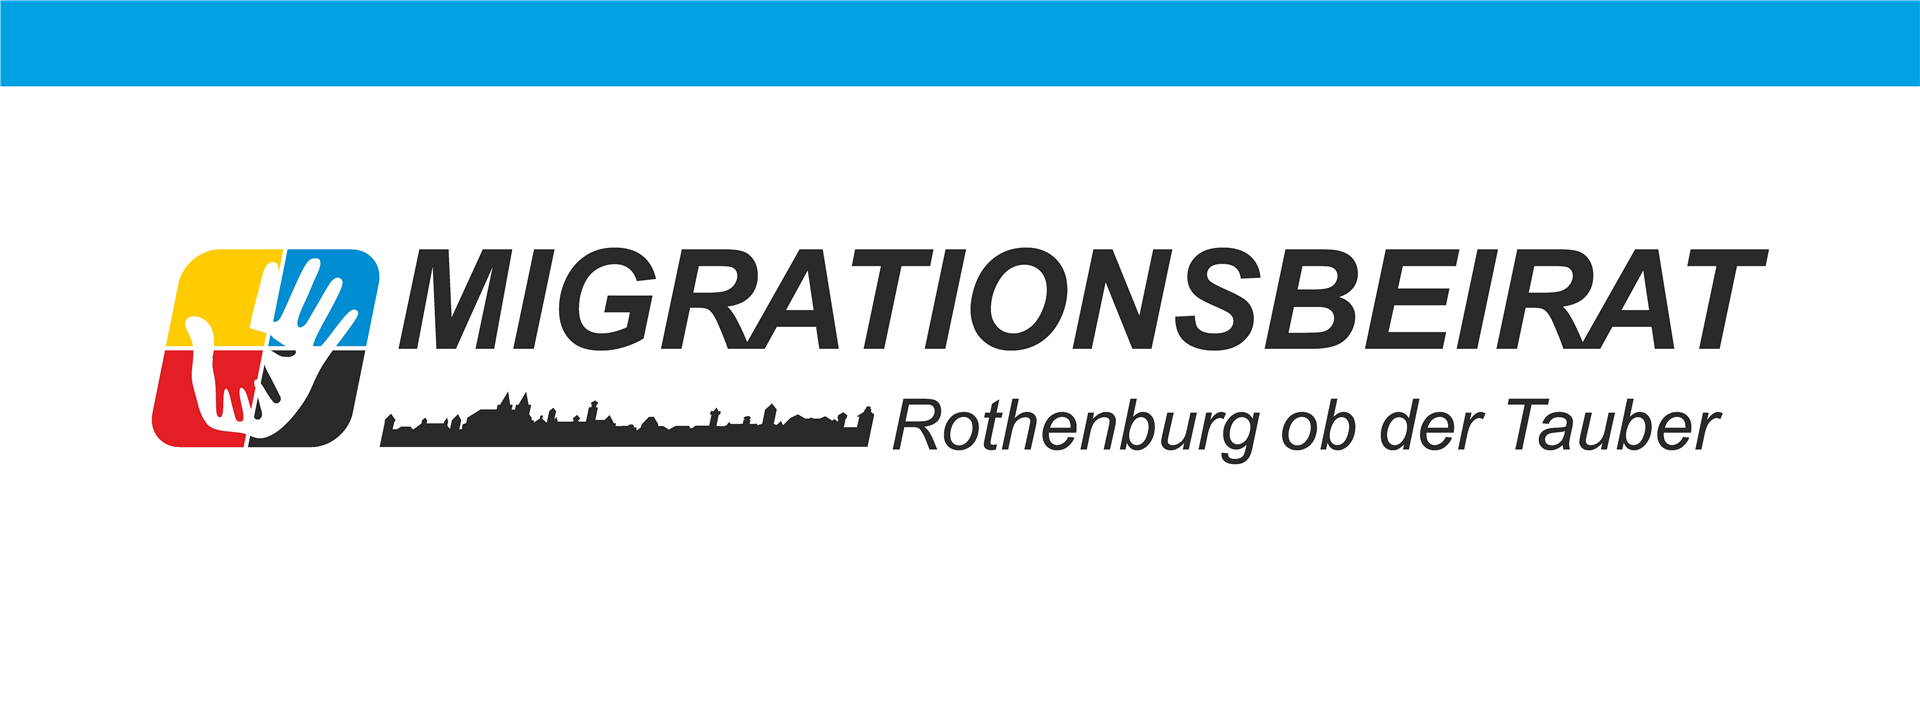 Kontakt | Migrationsbeirat Rothenburg ob der